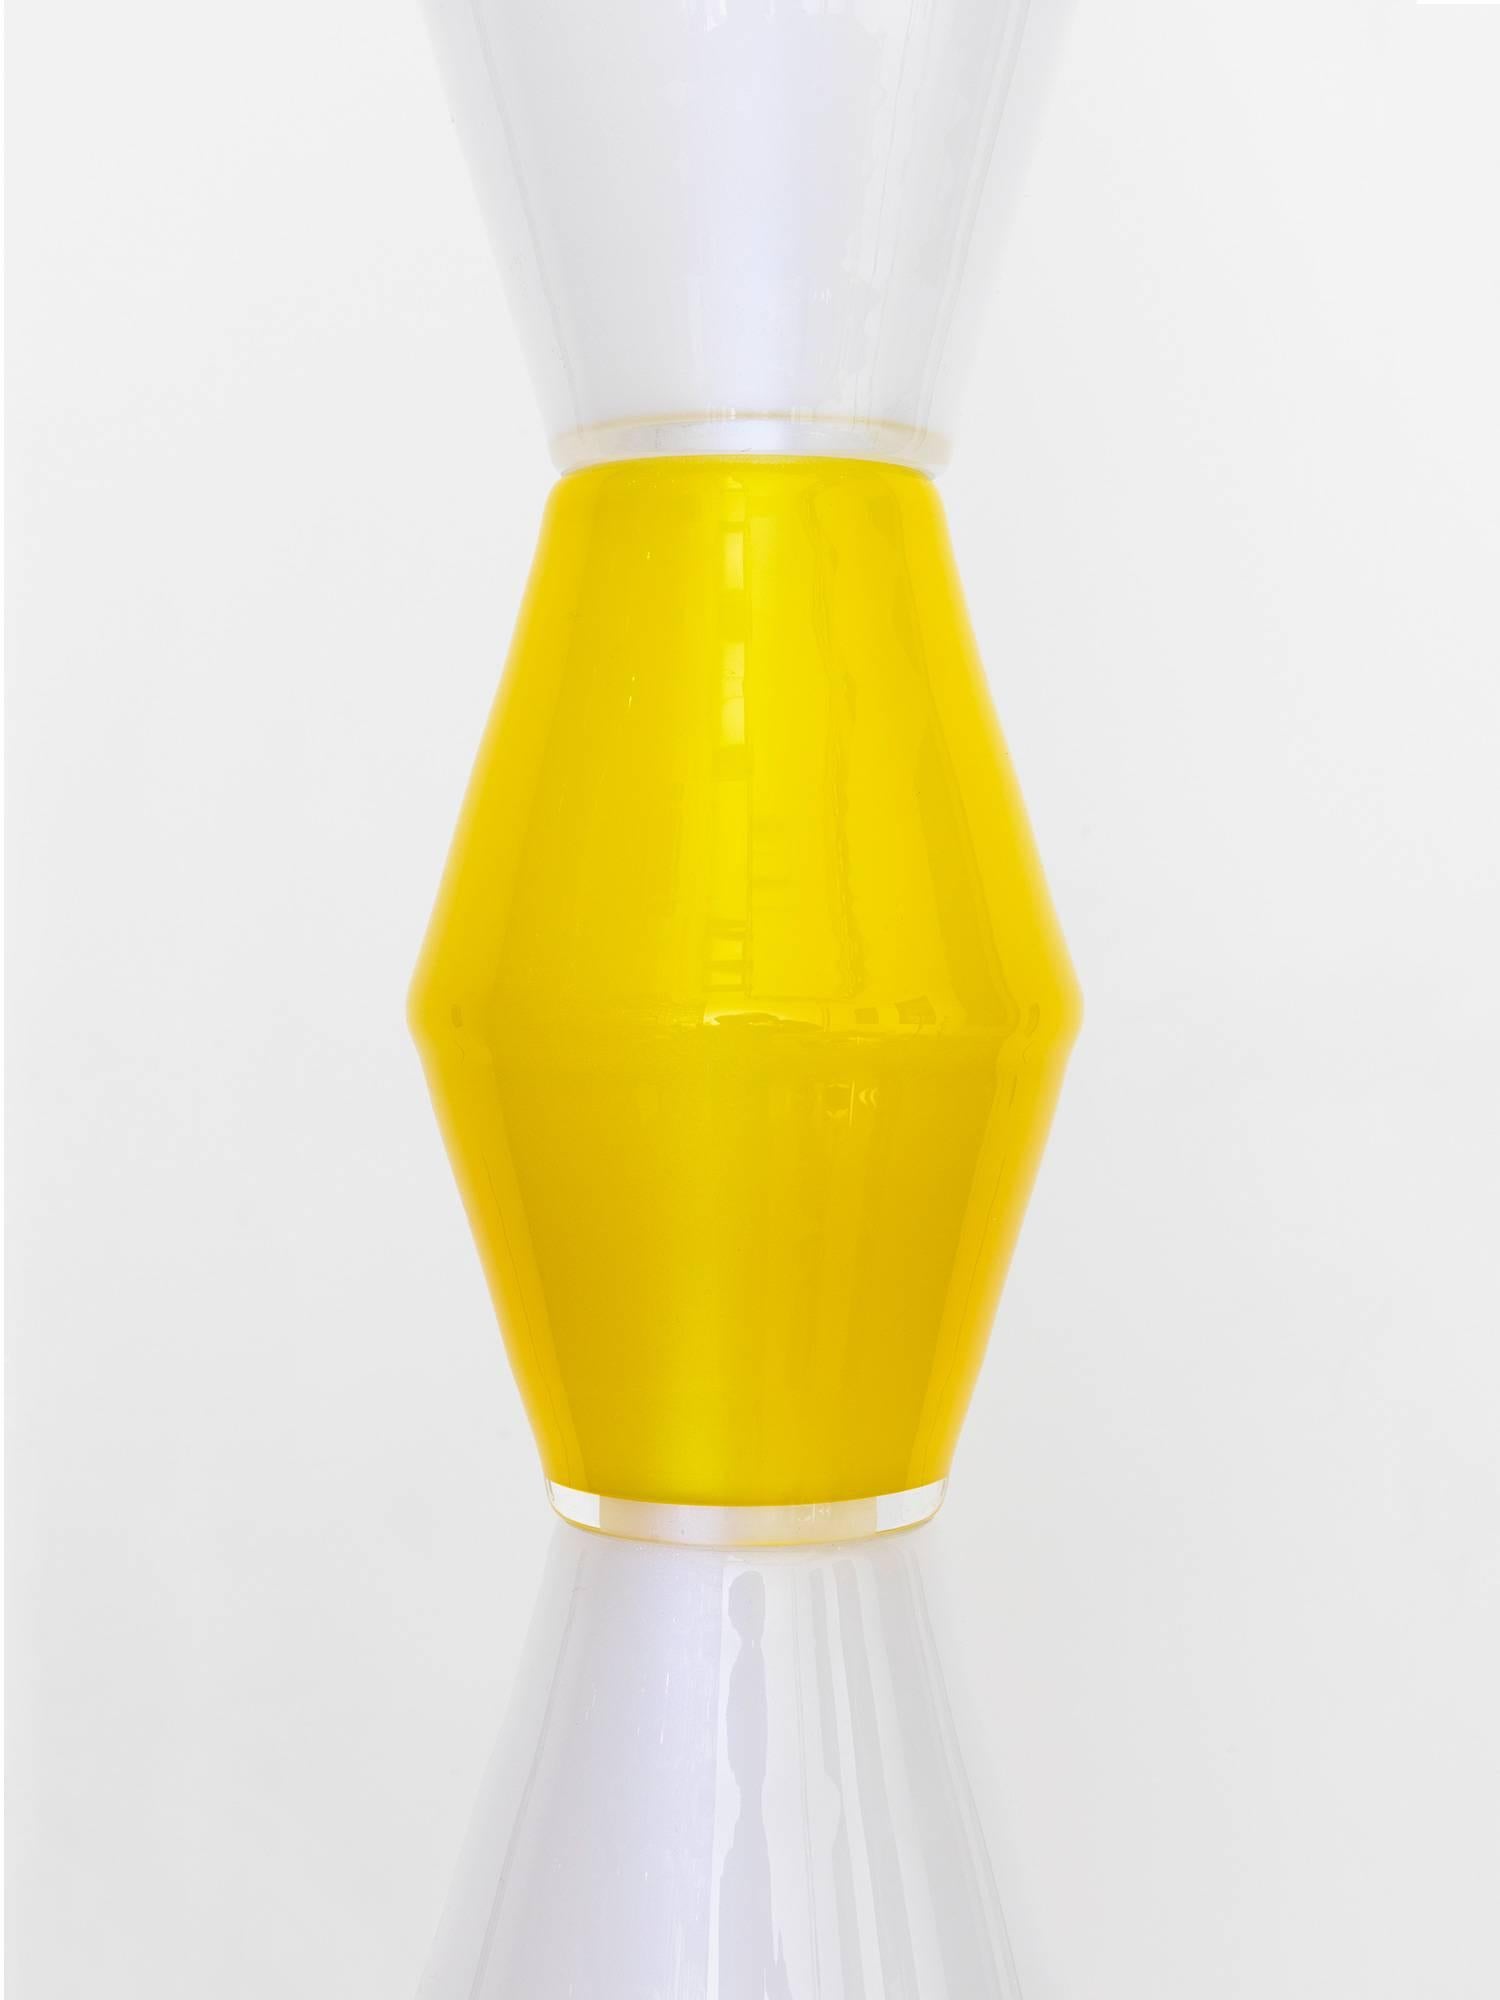 Handgefertigte, totemistische Glas-Hängelampe des norwegischen Künstlers/Architekten Tron Meyer. Die Leuchte besteht aus 11 gelben und weißen Glasformen, die um einen LED-Kern herum angeordnet sind und in einem 200 Jahre alten Glasstudio in Norwegen